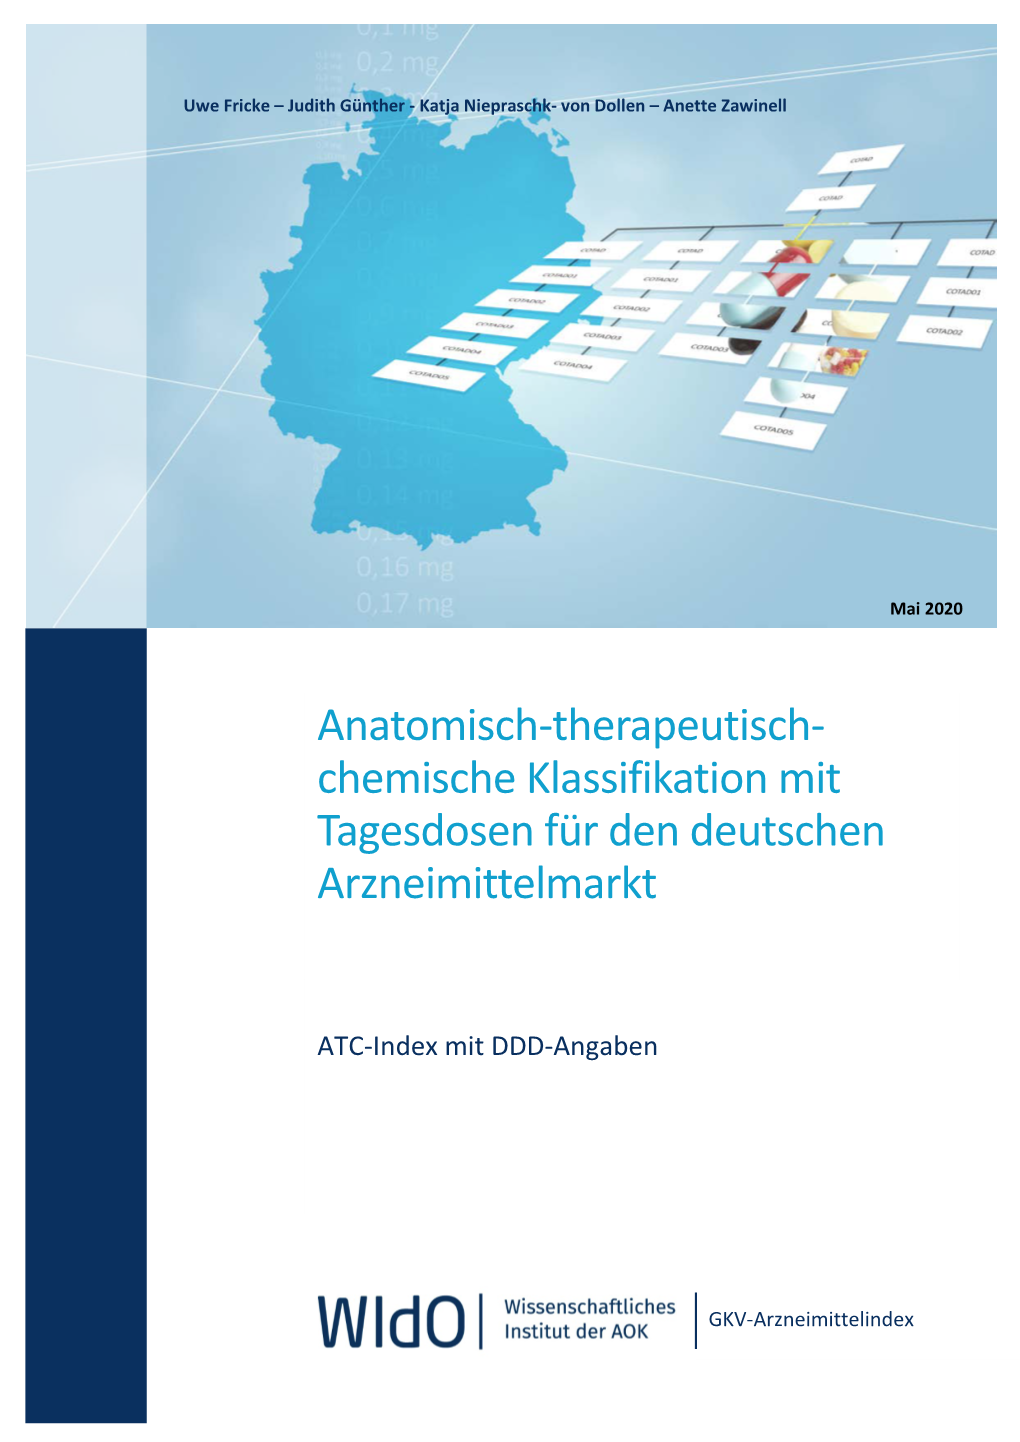 ATC-Index Mit DDD-Angaben Für Deutschland Im Jahr 2020